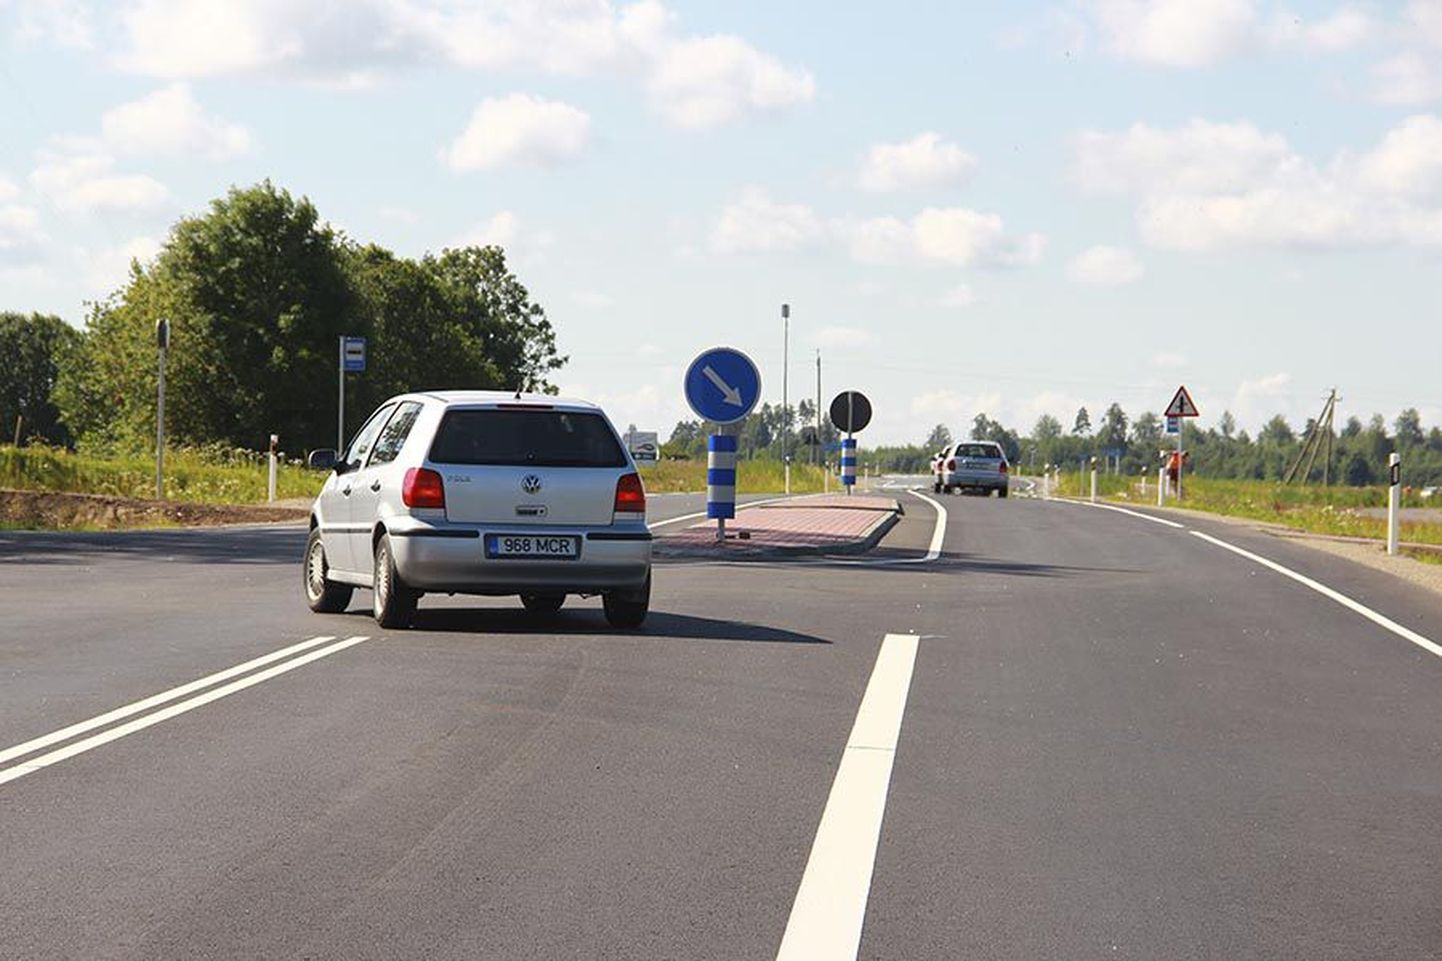 Viiratsi ristmikul liiklusmärgi ümber pandud sinivalge ümbris ei teeni loodetud moel ohutuse eesmärki ja see eemaldatakse.